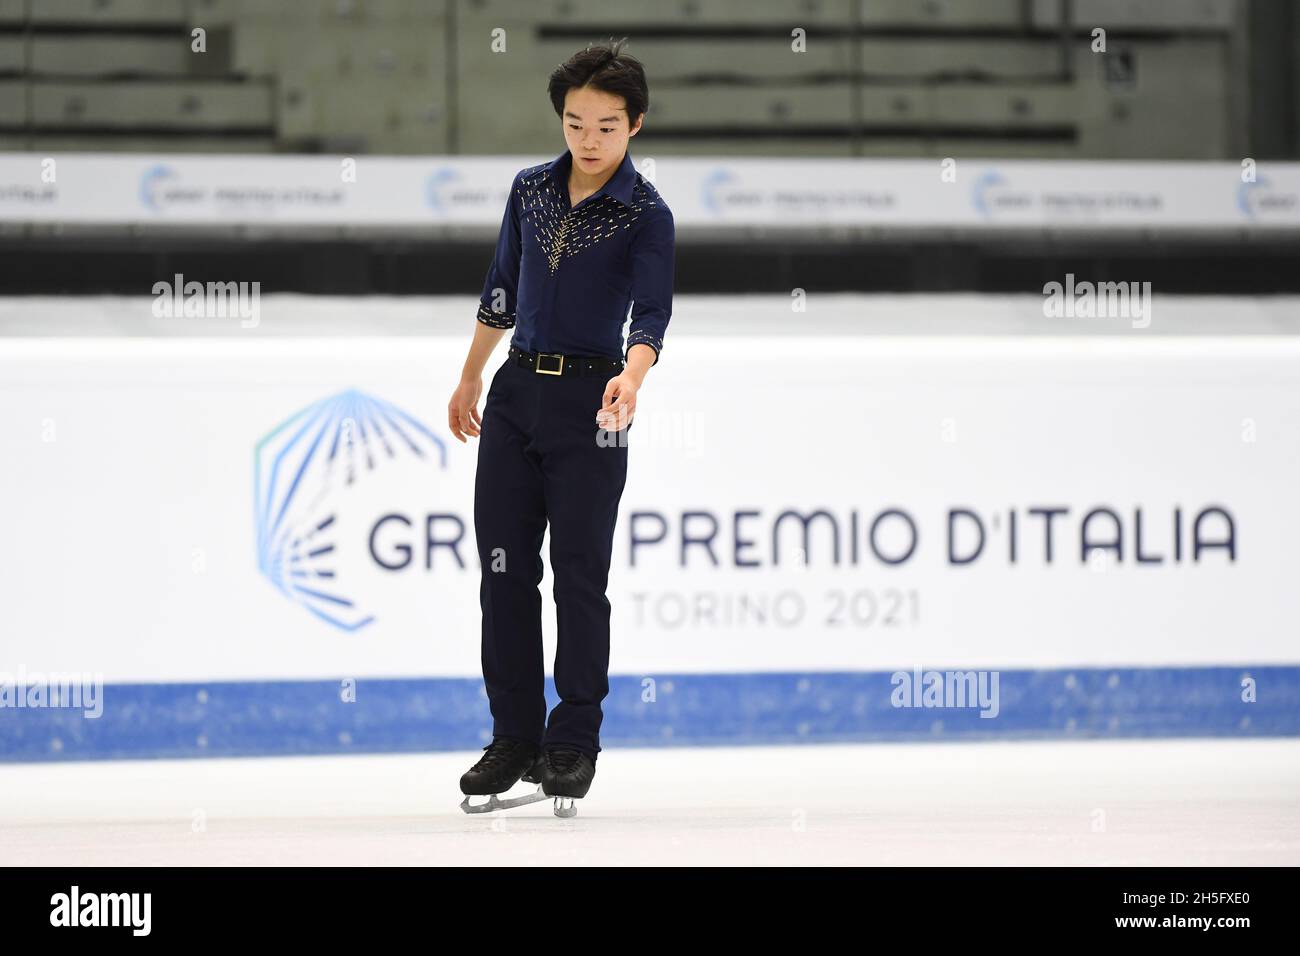 Yuma KAGIYAMA, JPN, pendant la pratique, au Grand Prix de patinage artistique de l'UIP - Gran Premio d'Italia, à Palavela, le 5 novembre 2021 à Turin, Italie.(Photo de Raniero Corbelletti/AFLO) Banque D'Images